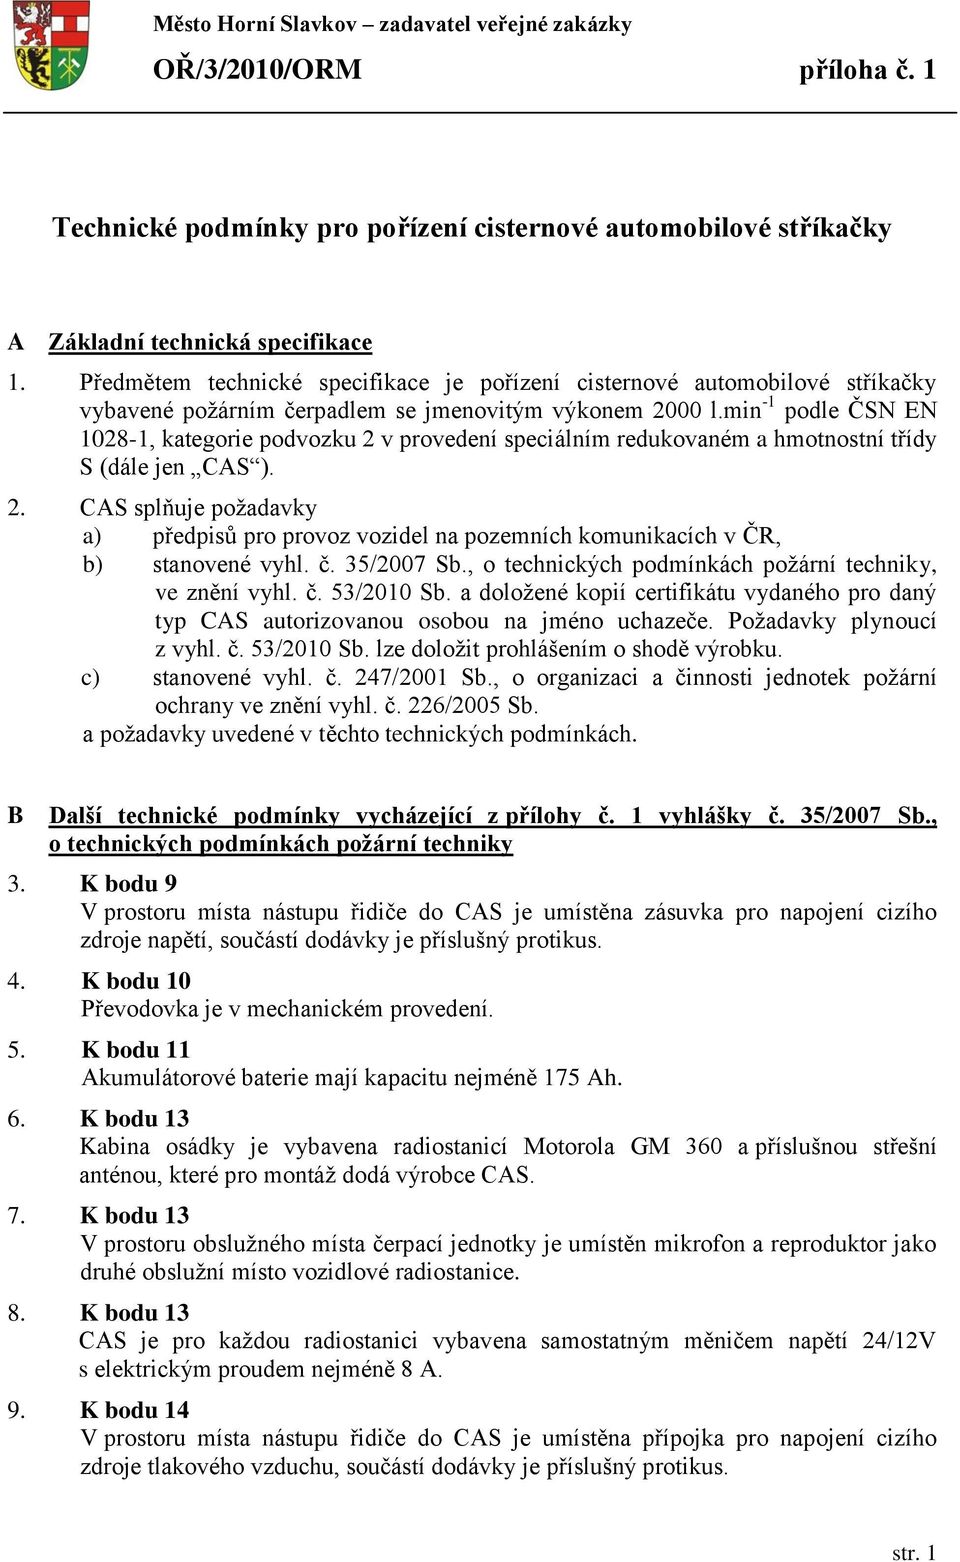 min -1 podle ČSN EN 1028-1, kategorie podvozku 2 v provedení speciálním redukovaném a hmotnostní třídy S (dále jen CAS ). 2. CAS splňuje požadavky a) předpisů pro provoz vozidel na pozemních komunikacích v ČR, b) stanovené vyhl.